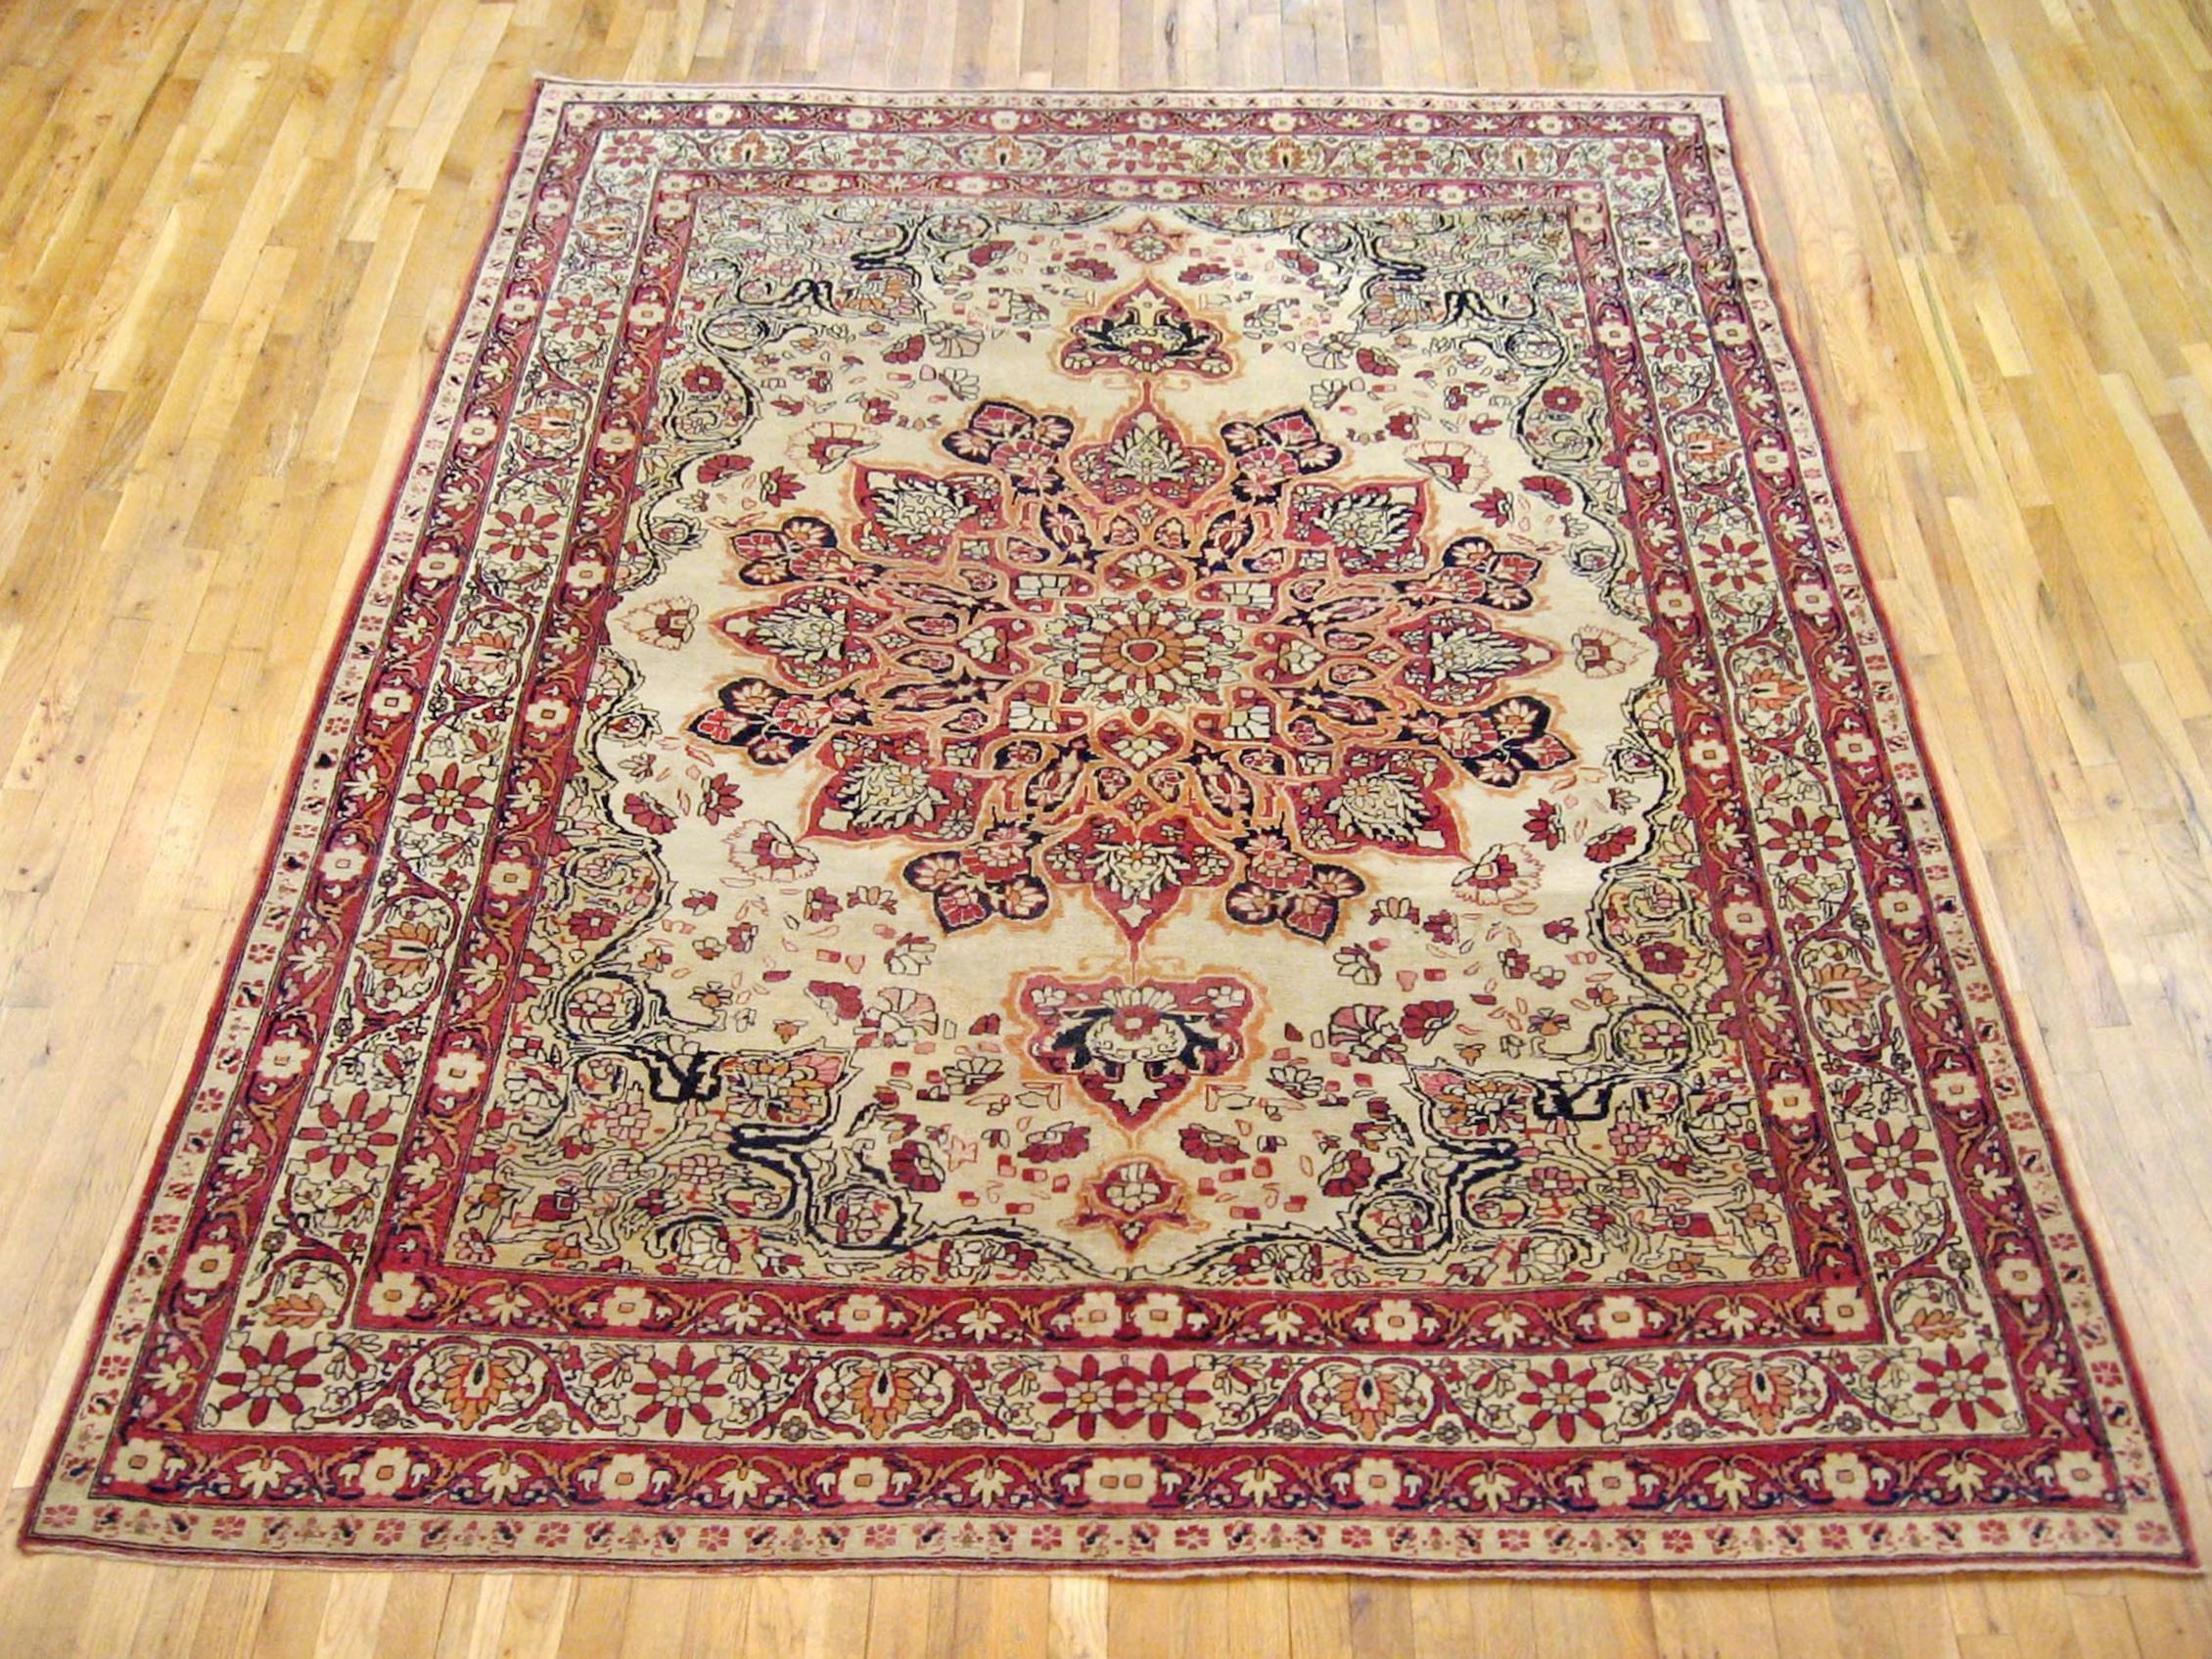 Antique Persian Lavar oriental carpet, room size, circa 1890.

An antique Persian Lavar oriental carpet, size: 10'0